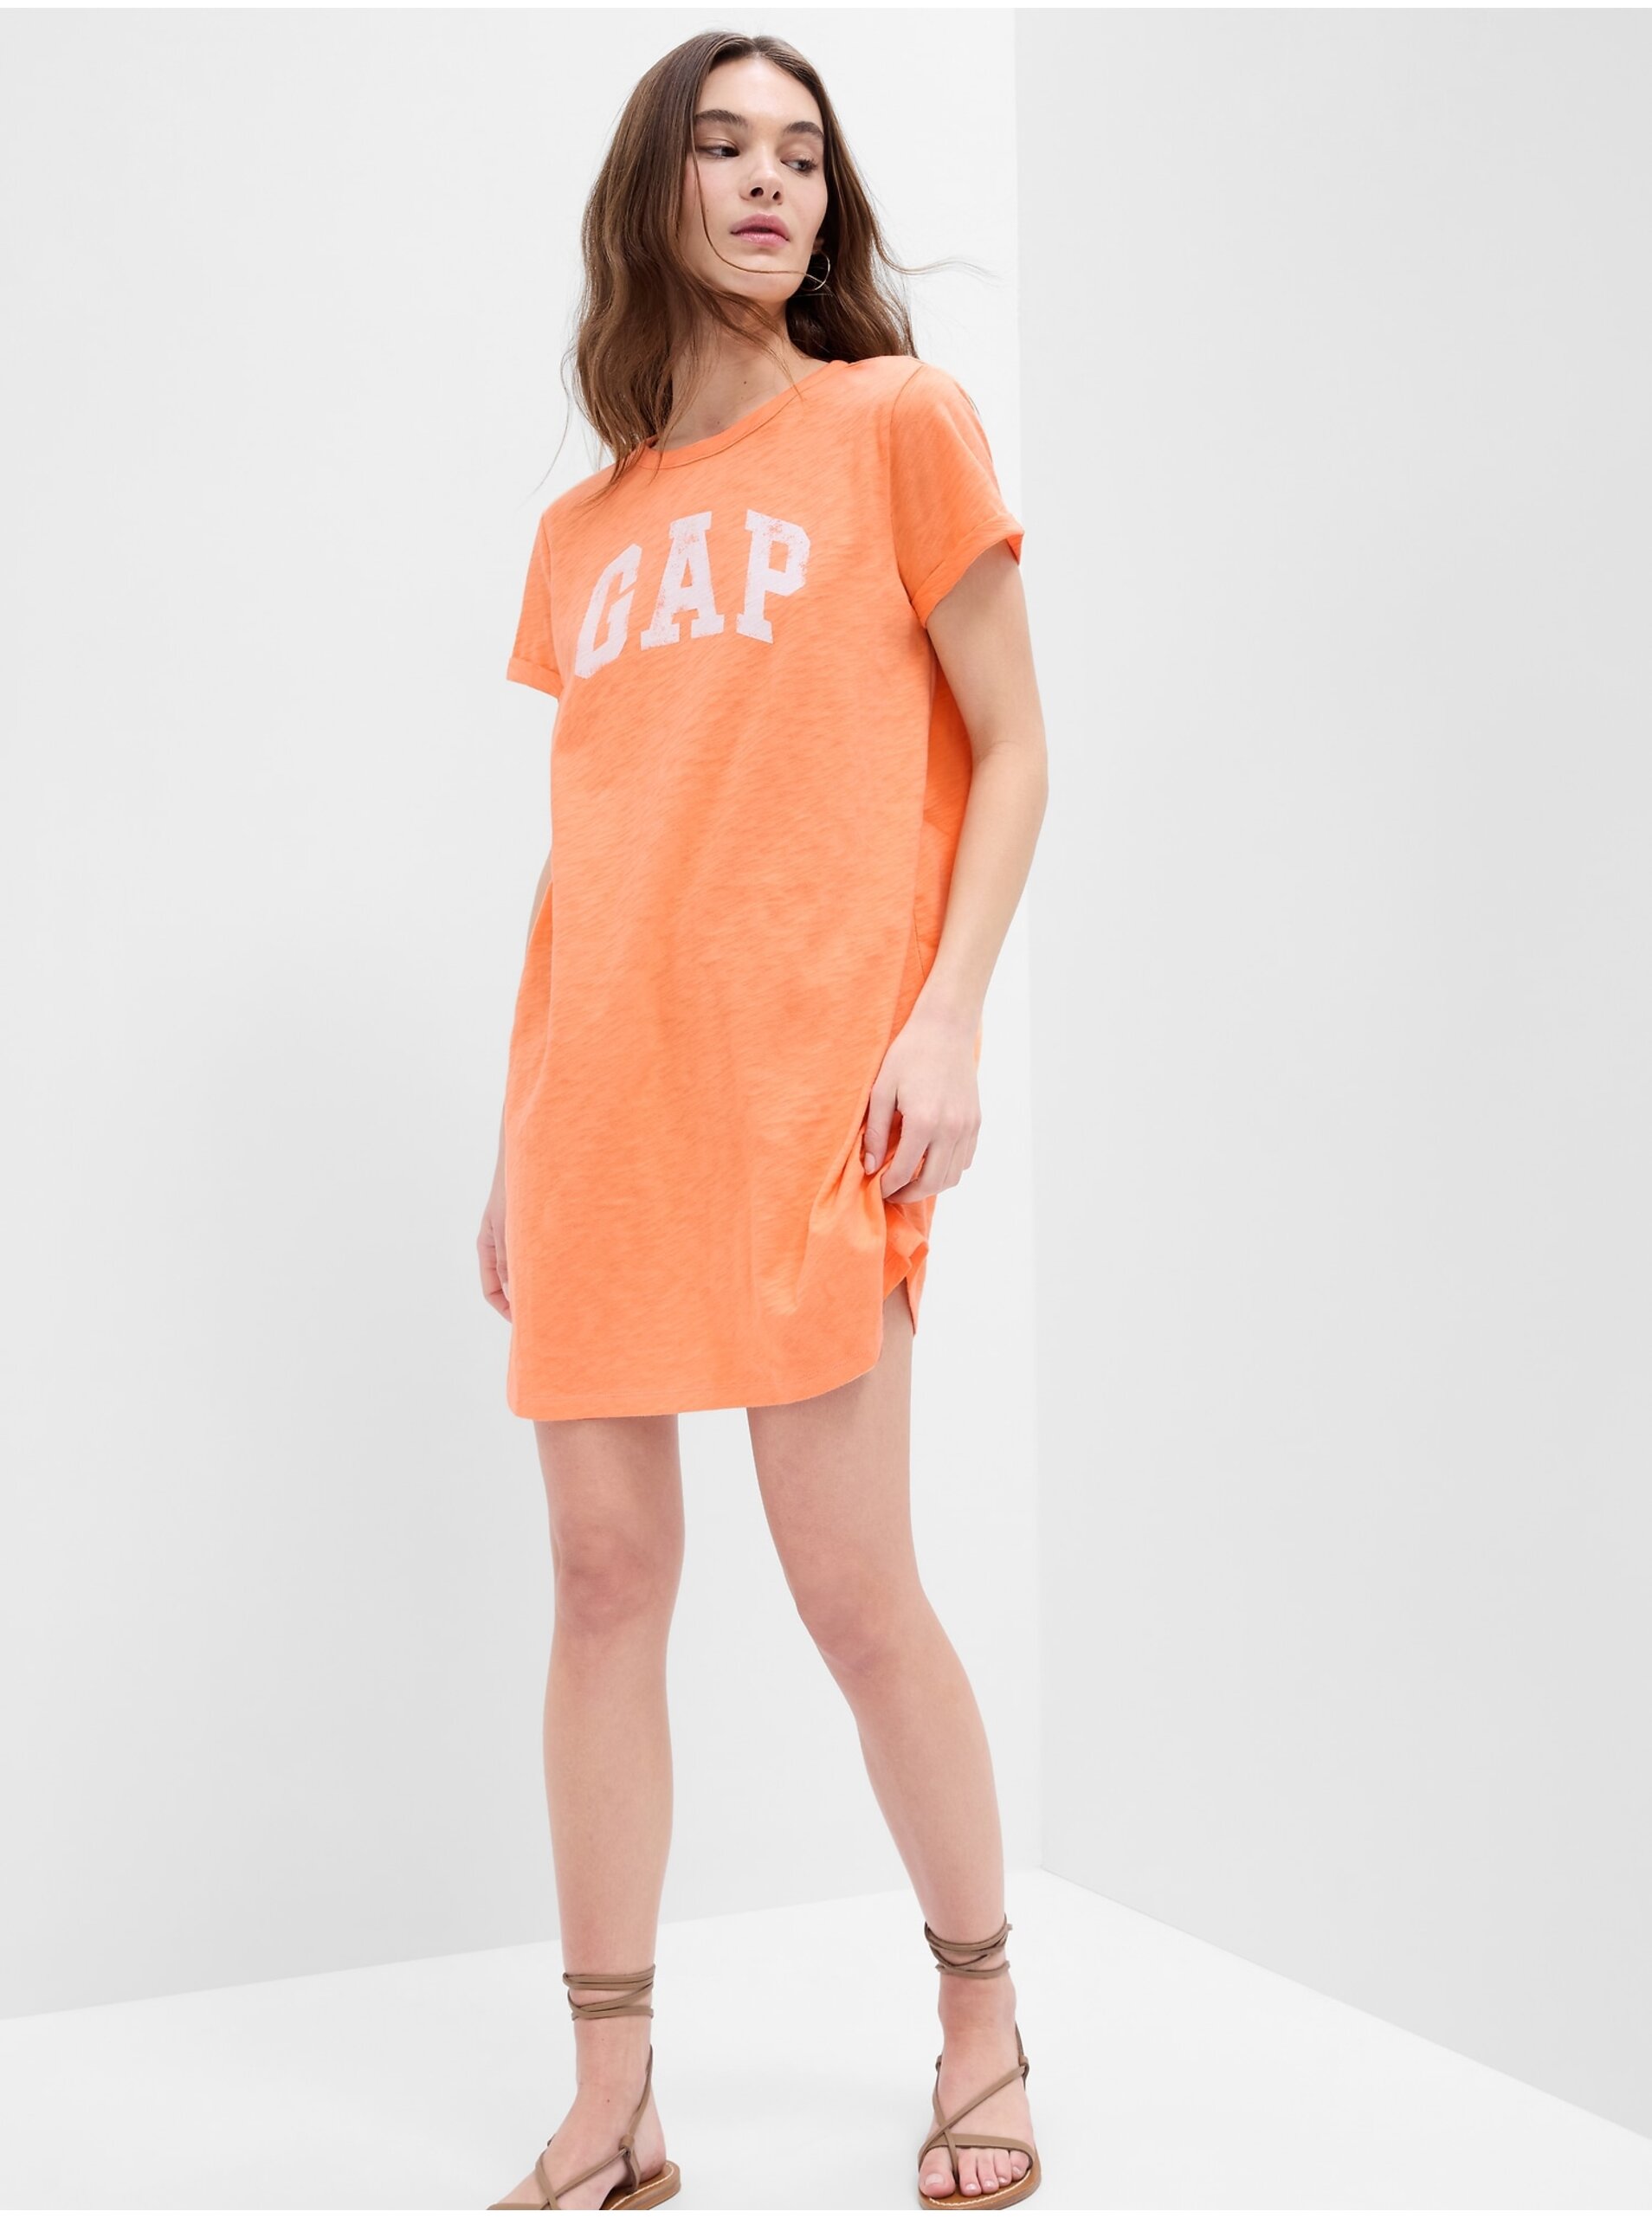 Lacno Letné a plážové šaty pre ženy GAP - oranžová, biela